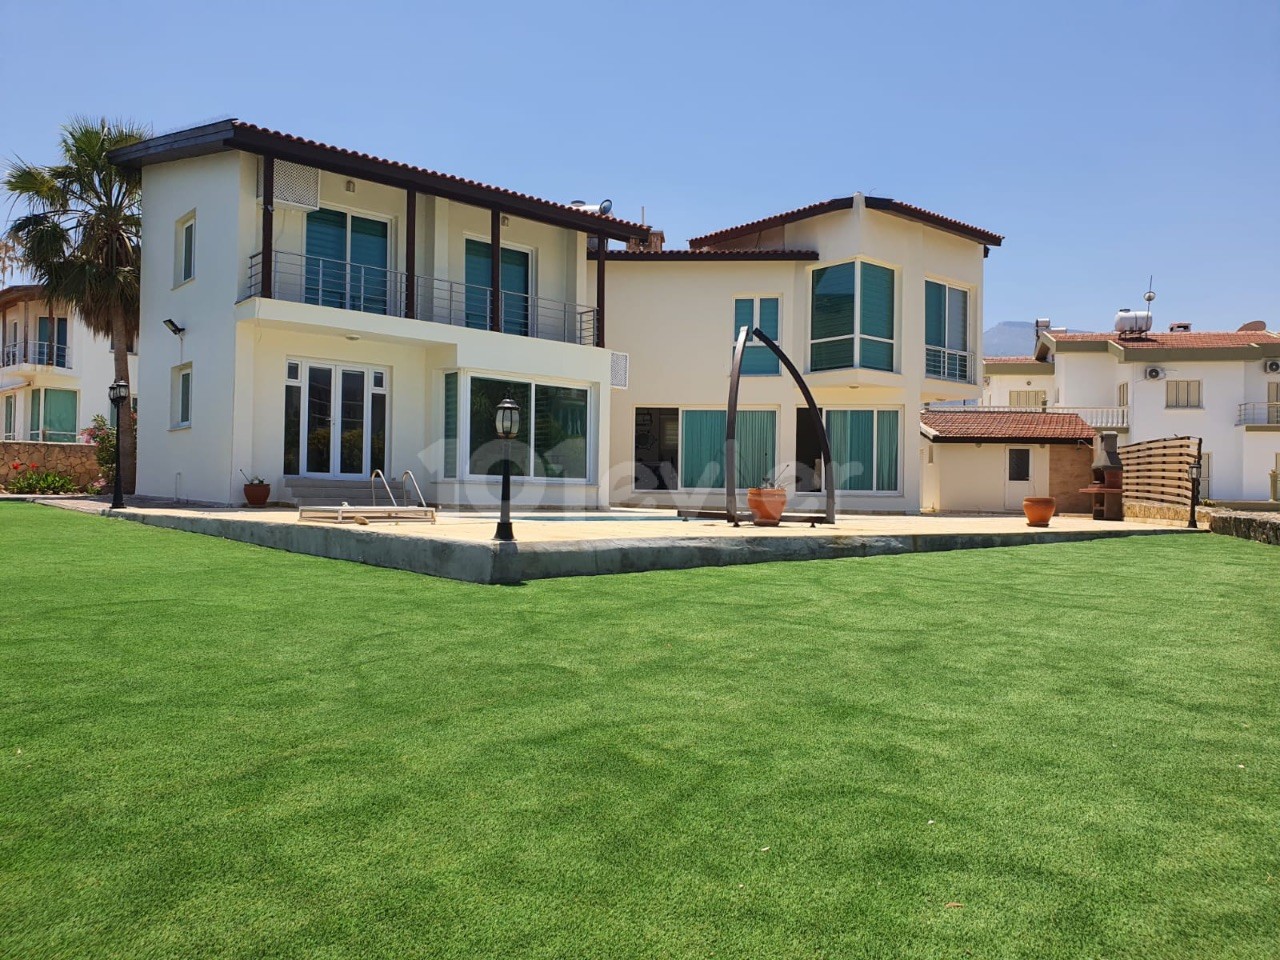 Girne Çatalköy’de Satılık Villa | Denize 15 mt Mesafede|1300 m2 Bakımlı Bahçe|Özel Havuz